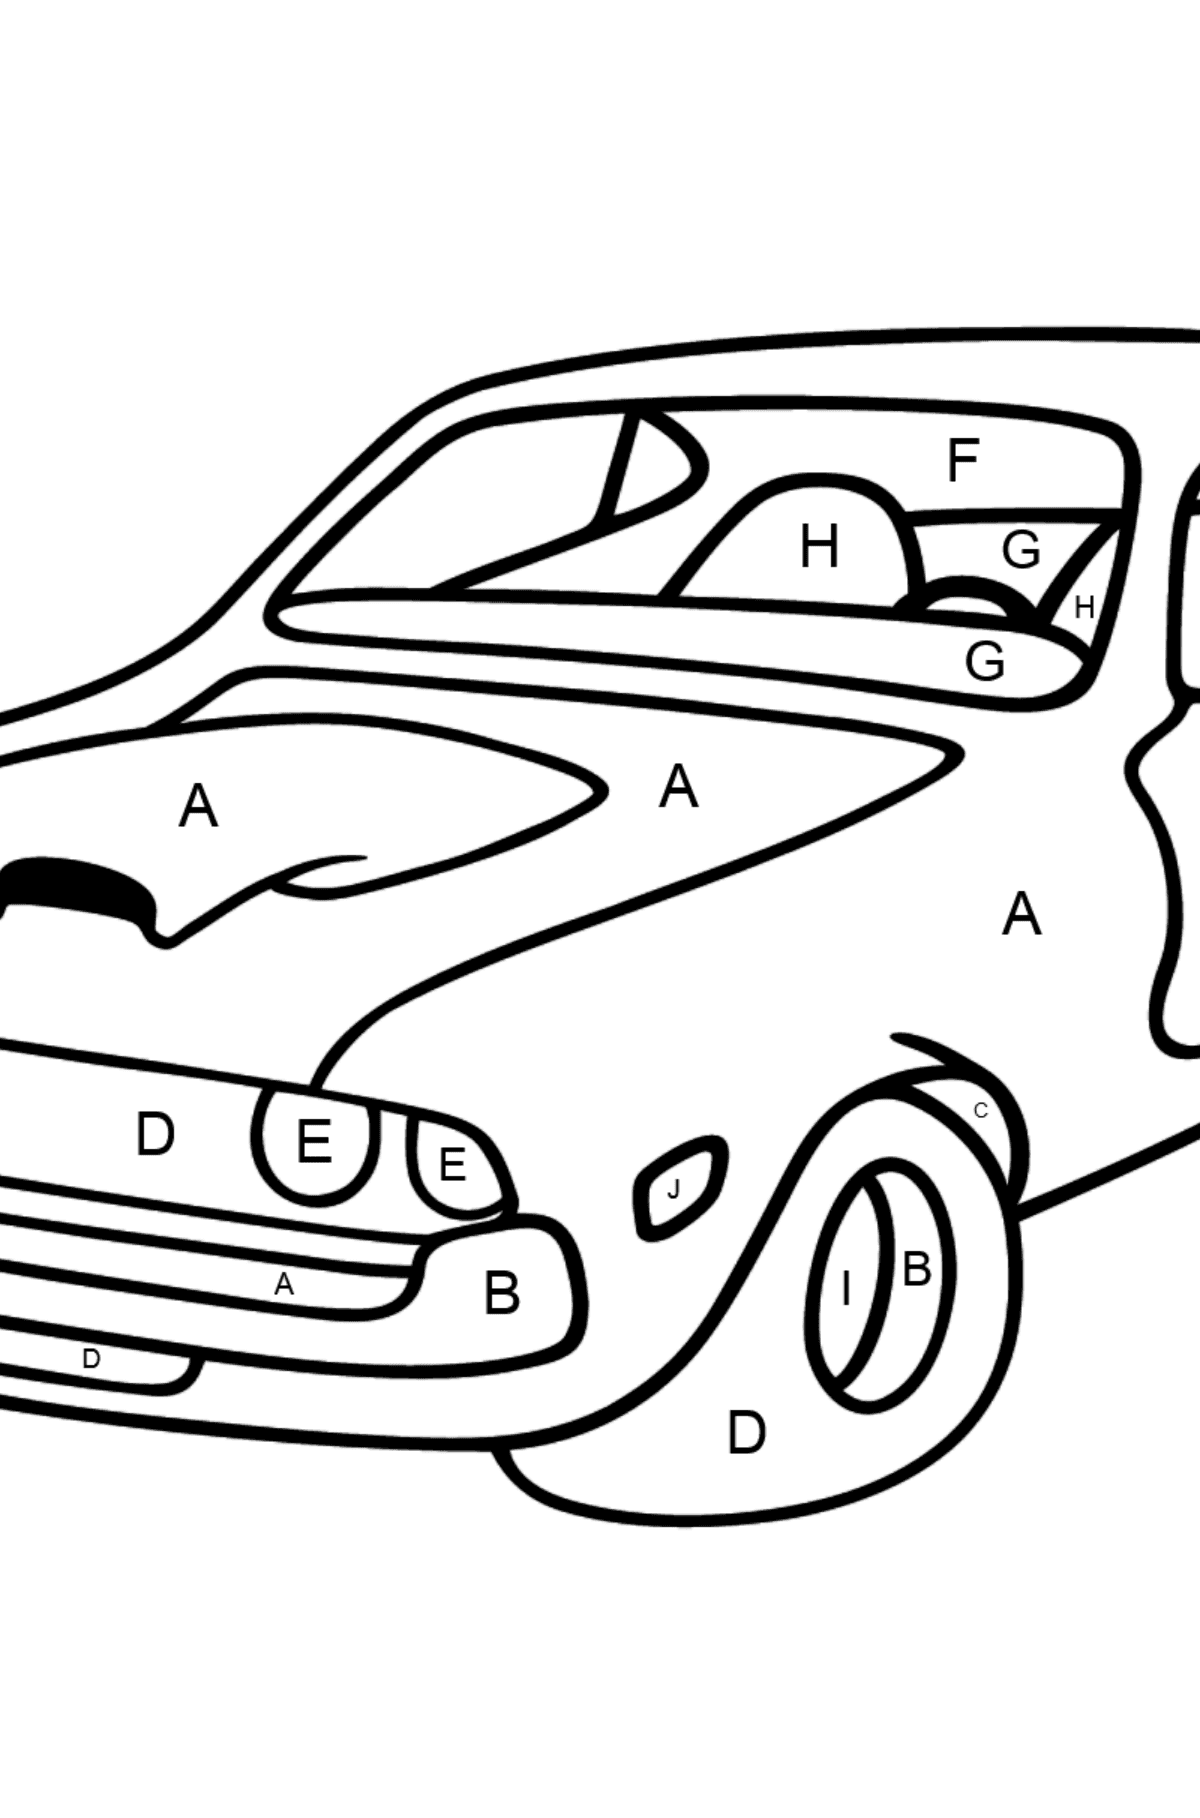 Desenho para colorir de um Carro esporte Chevrolet - Colorir por Letras para Crianças